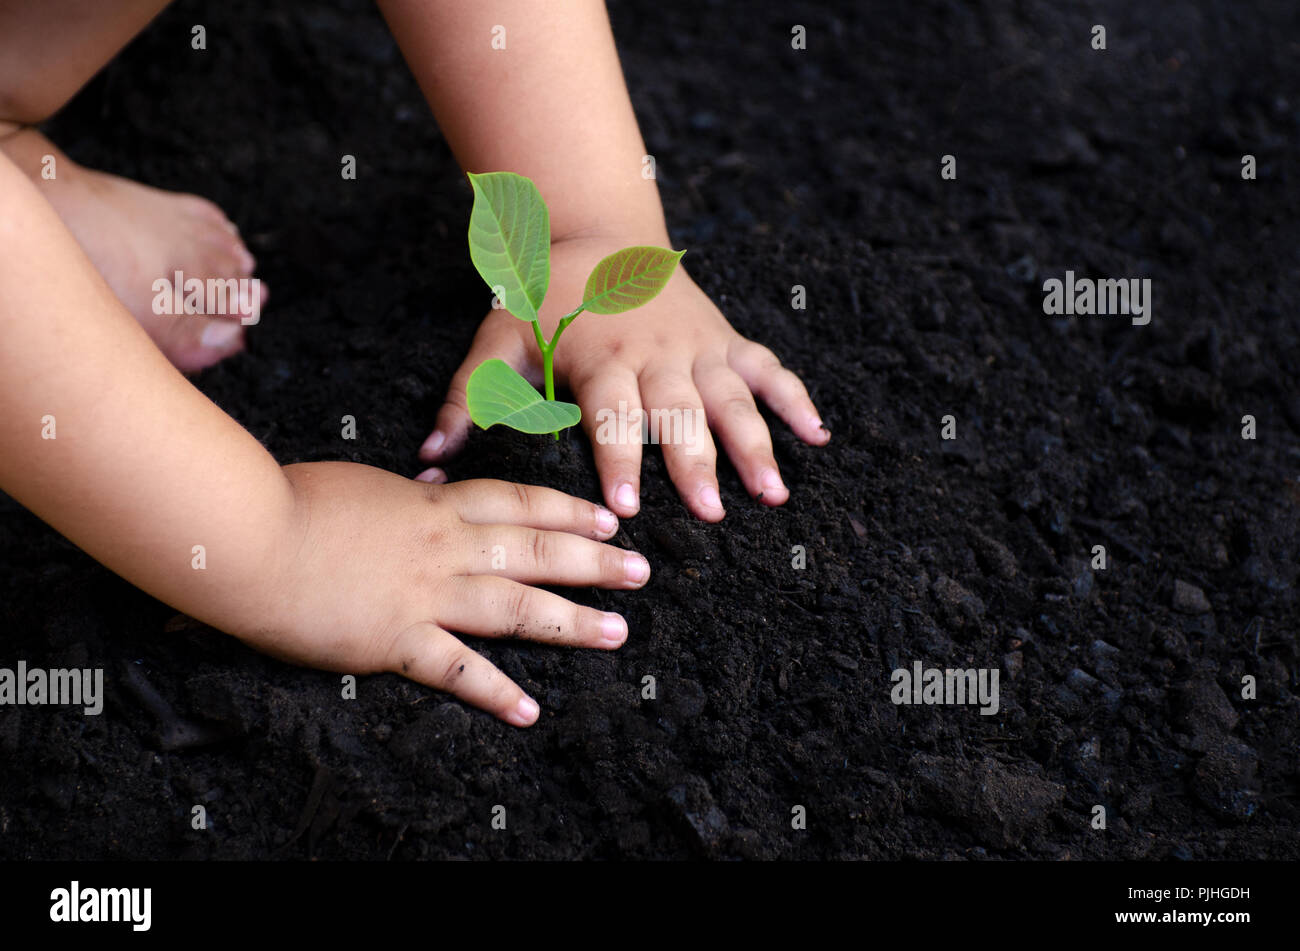 Baum sapling Baby Hand auf den dunklen Boden, das Konzept implantiert, das Bewusstsein der Kinder in die Umwelt. Stockfoto